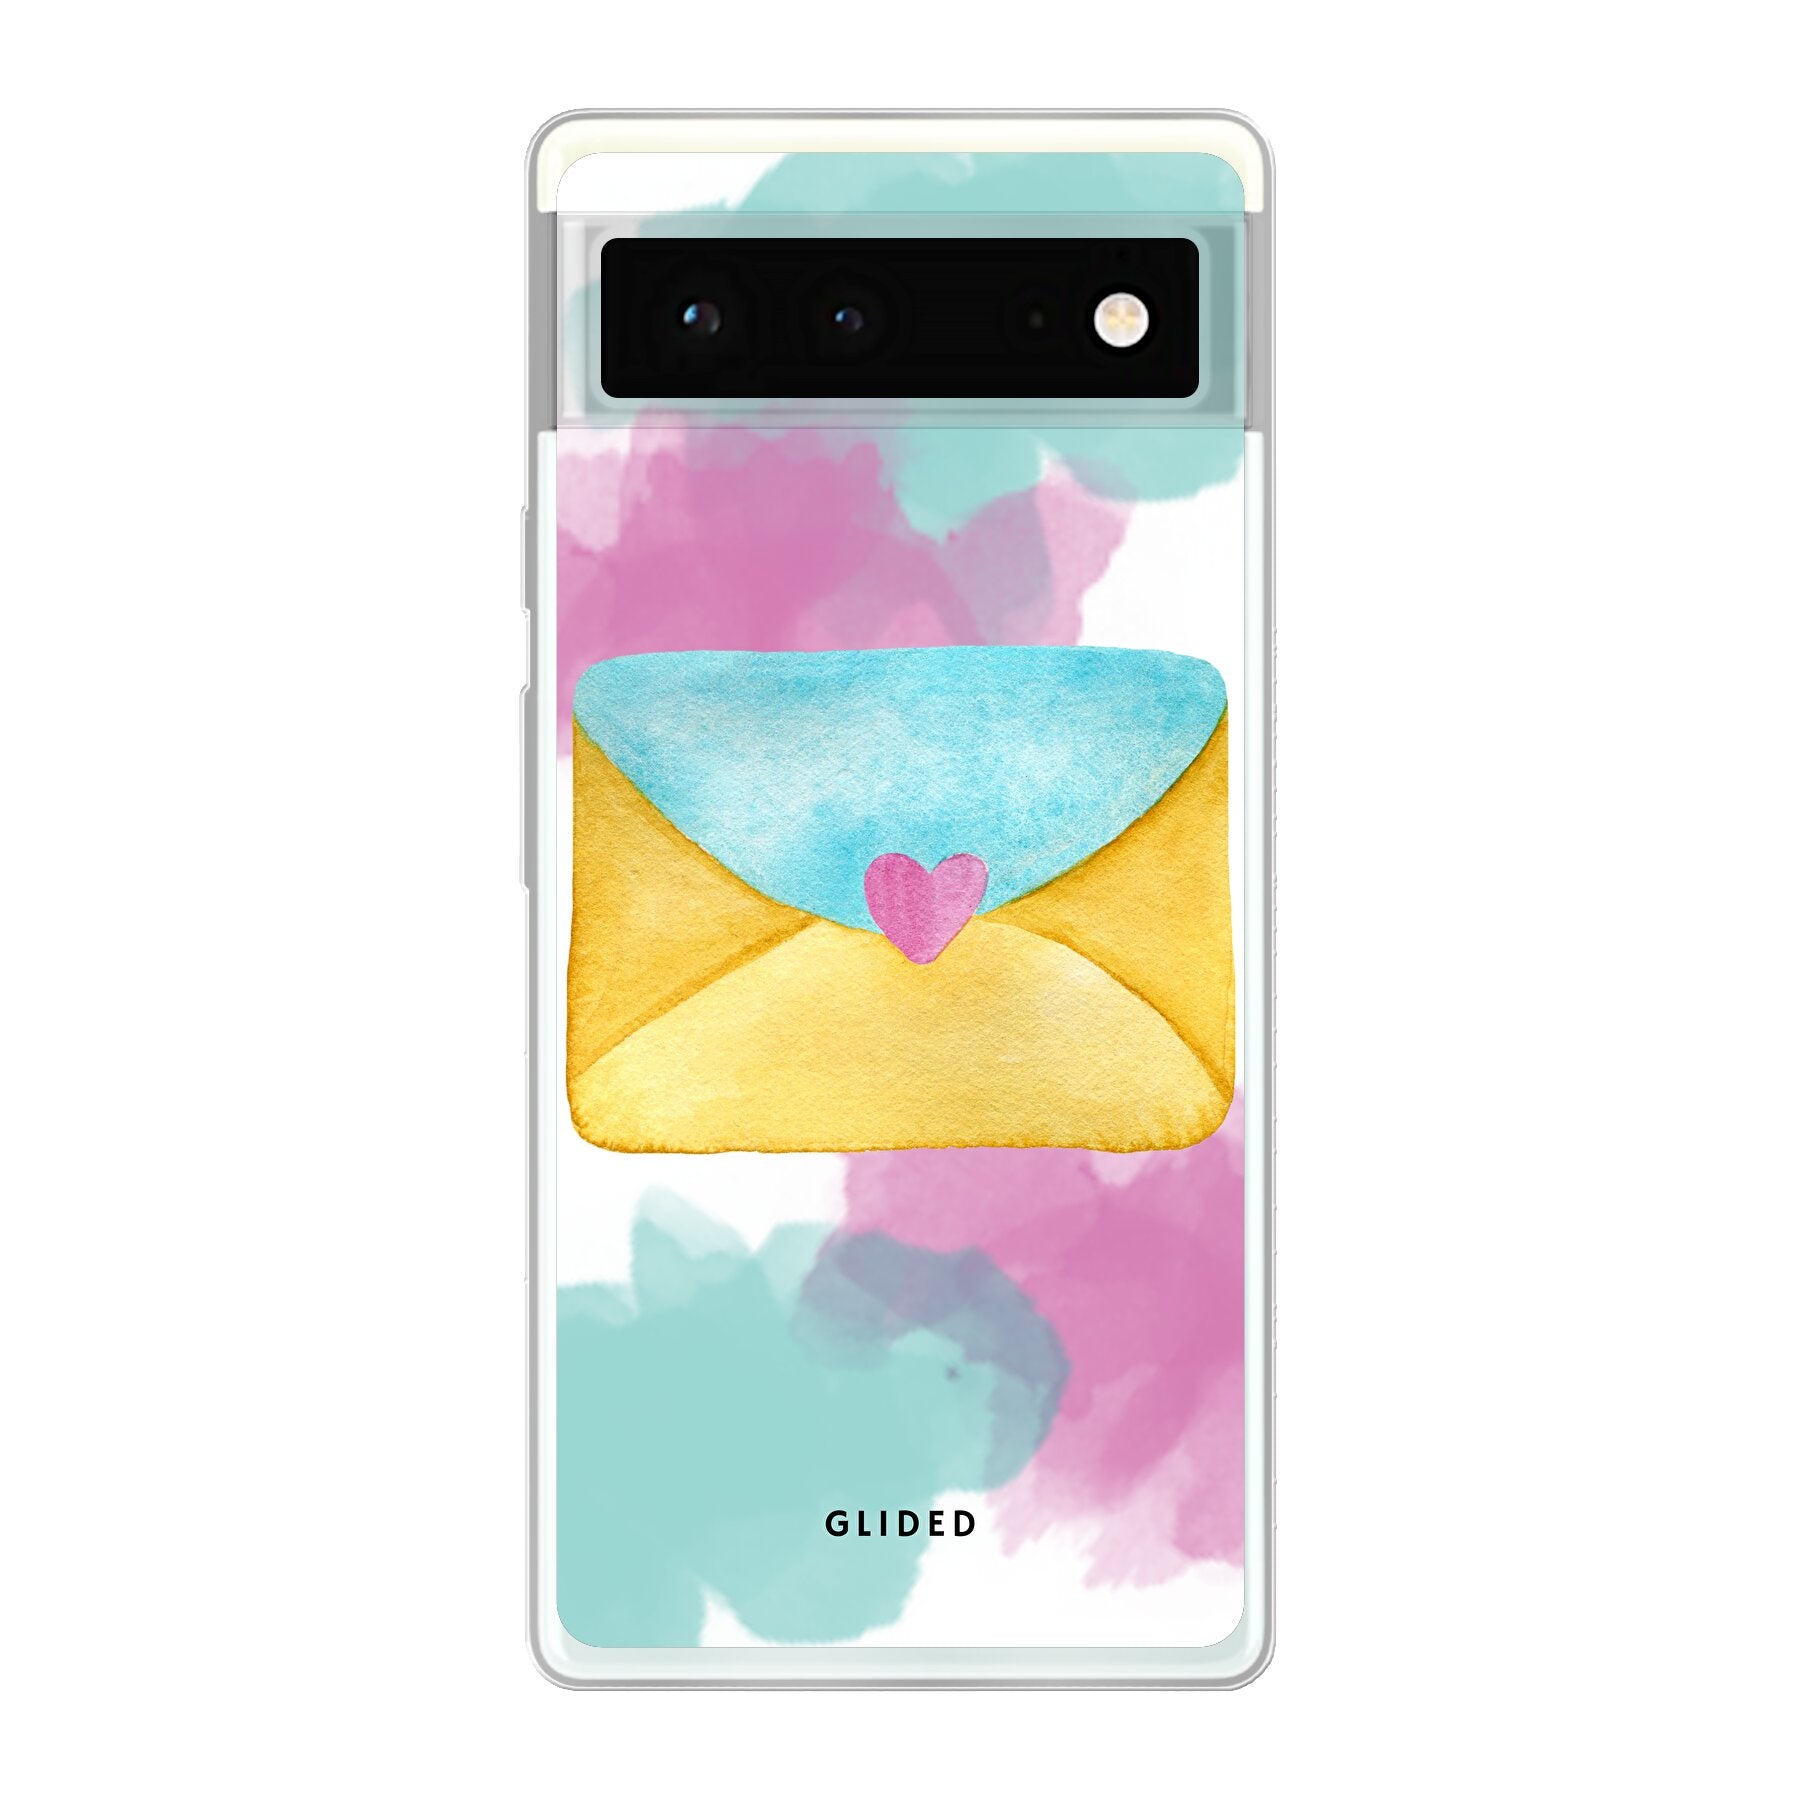 Envelope - Google Pixel 6 - Soft case